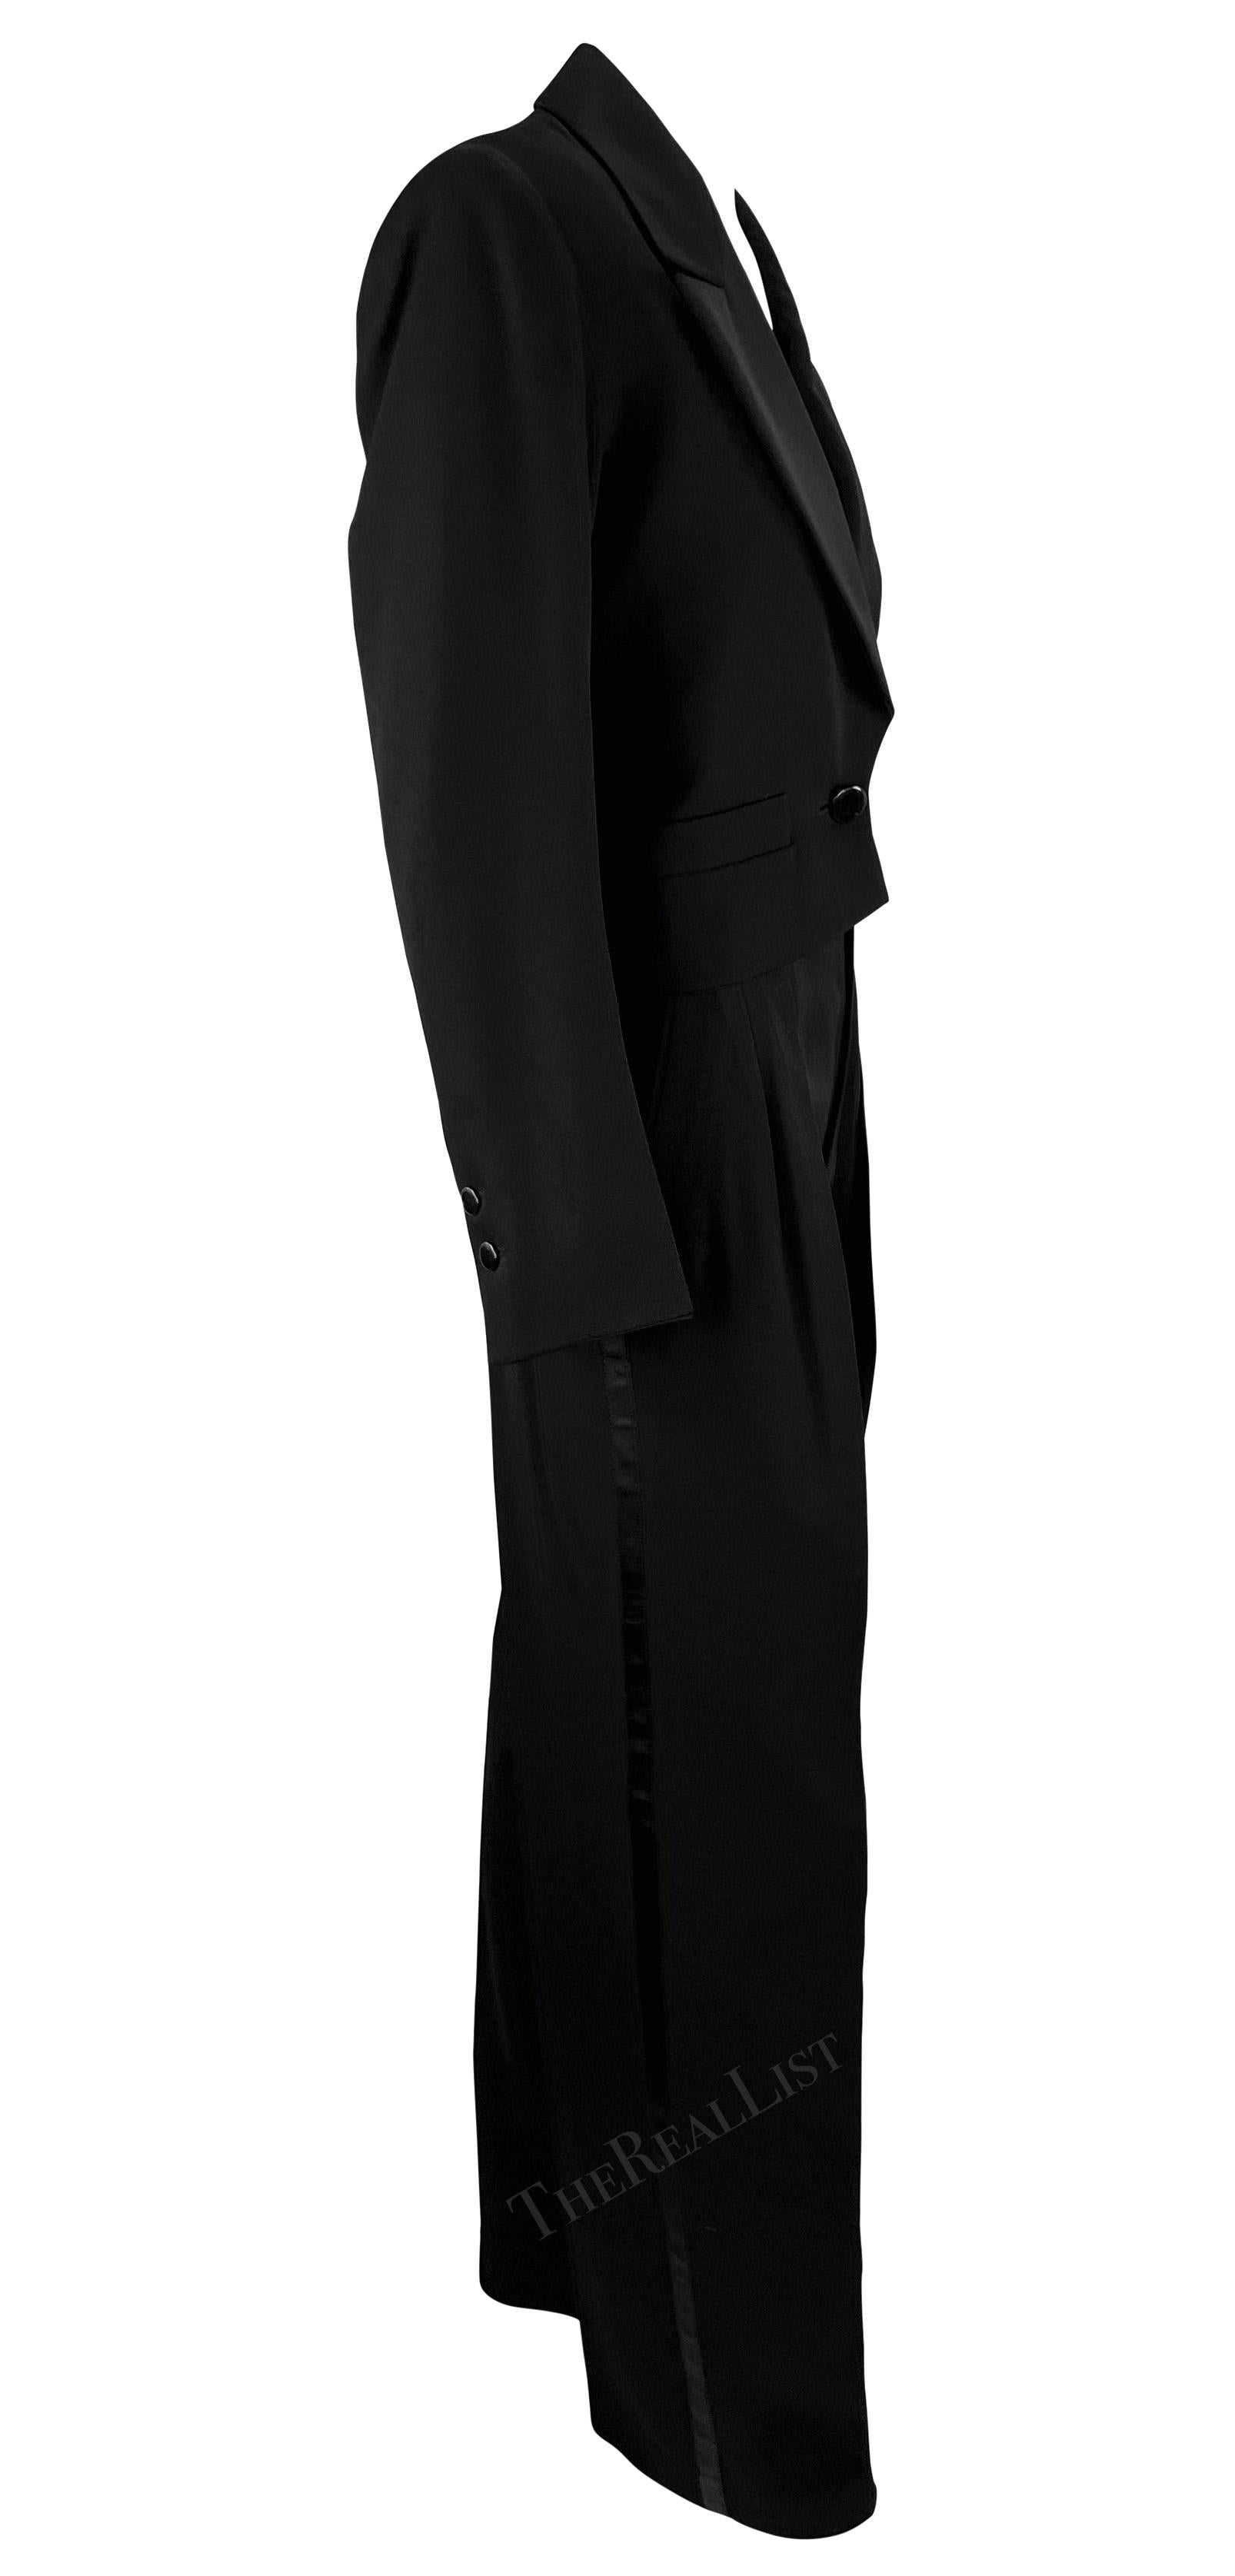 1980s Saint Laurent Rive Gauche Cropped Le Smoking Tuxedo Satin Black Pantsuit For Sale 2